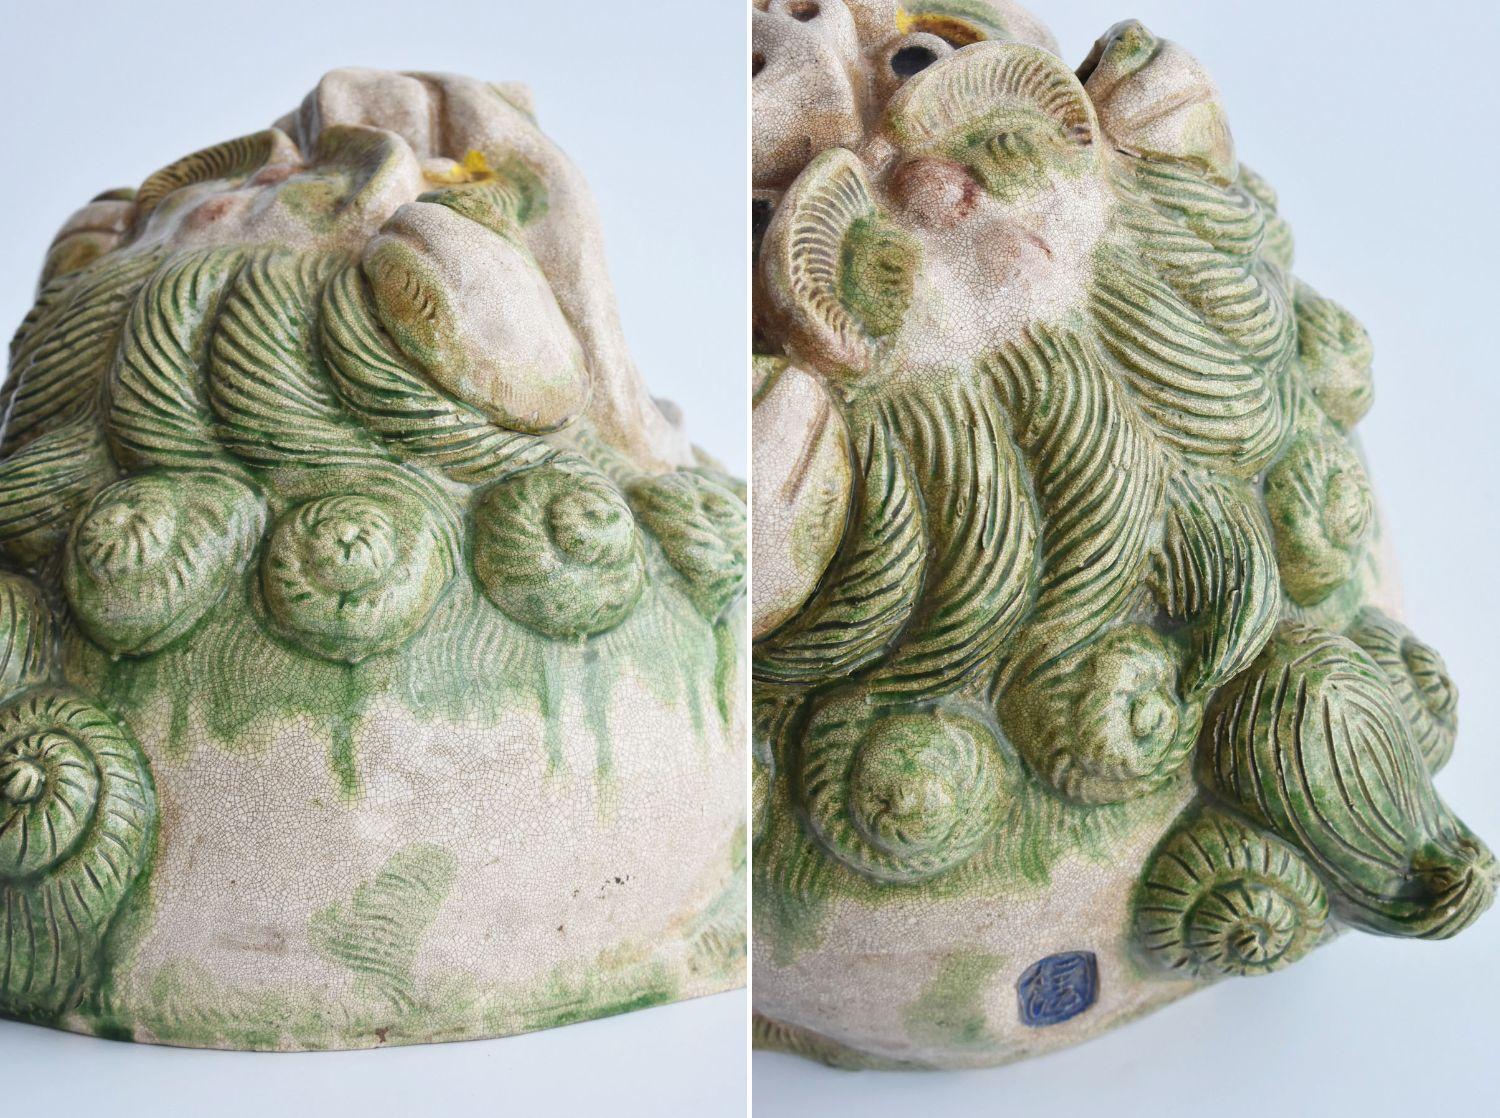 Japanese Antique Pottery Lion Figurine / Hand Roasting / Large Incense Burner 10